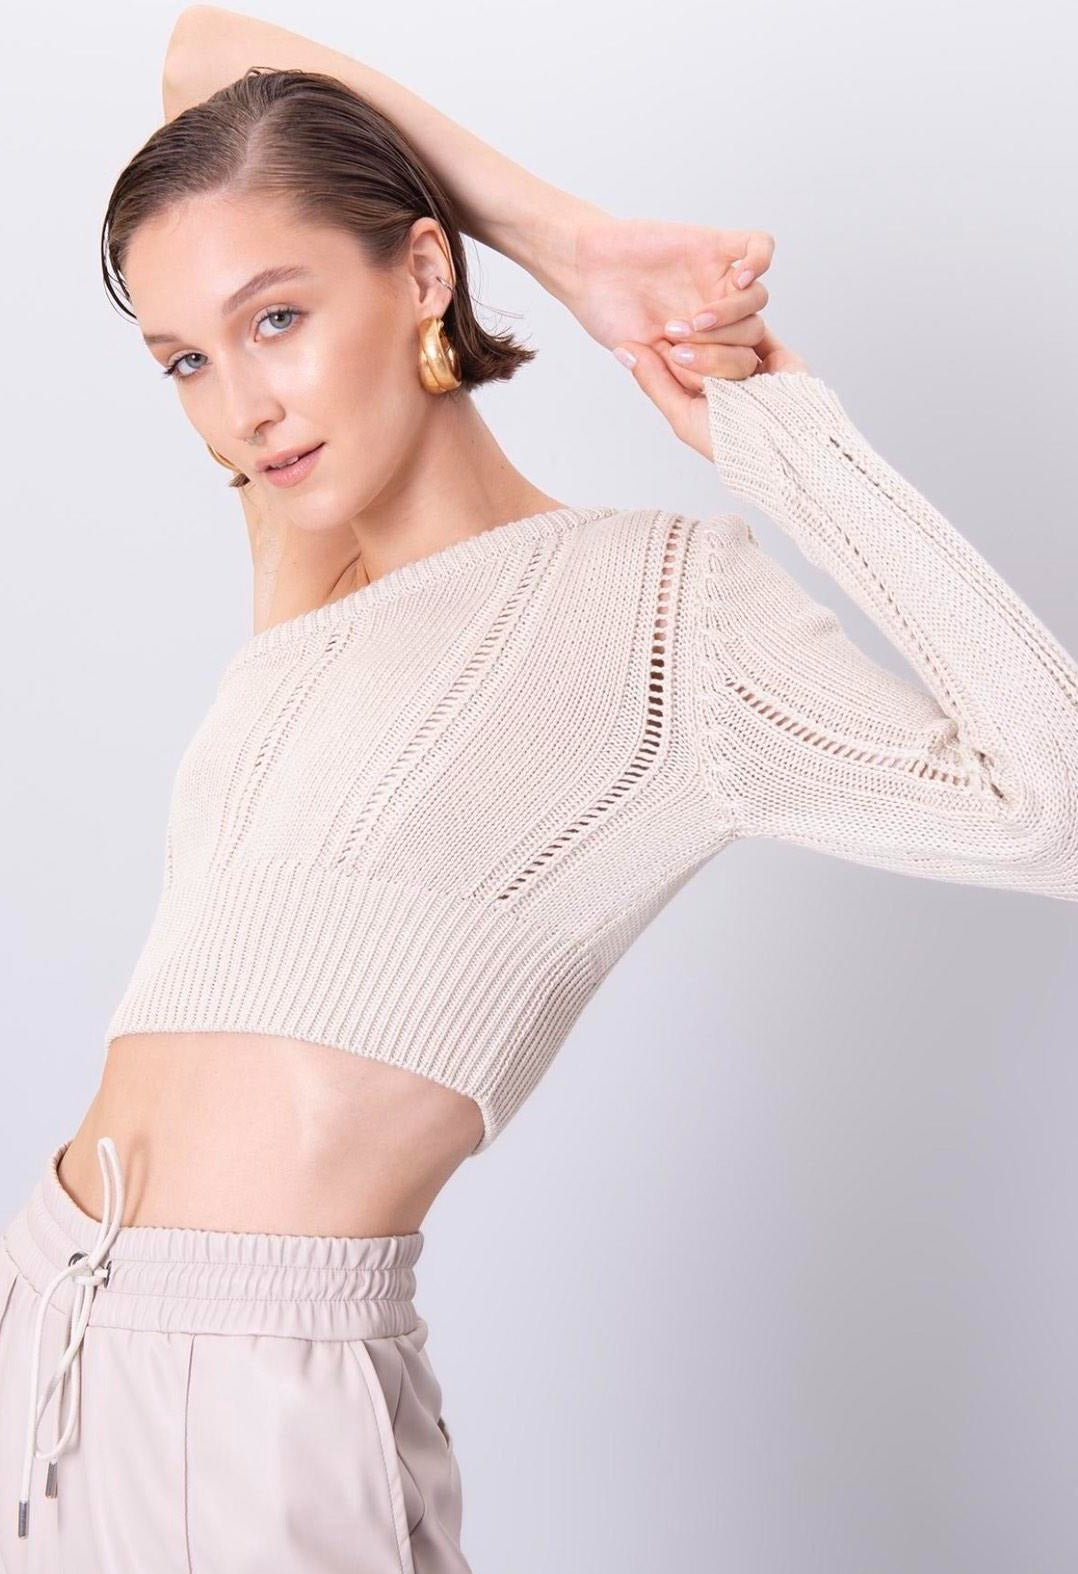 Дамски пуловер BELLA  https://bvseductive.com/products/дамски-пуловер-bella-1  100% акрил атрактивен къс дамски пуловер с един ръкав в бвжов цвят тренди предложение за вашата визия